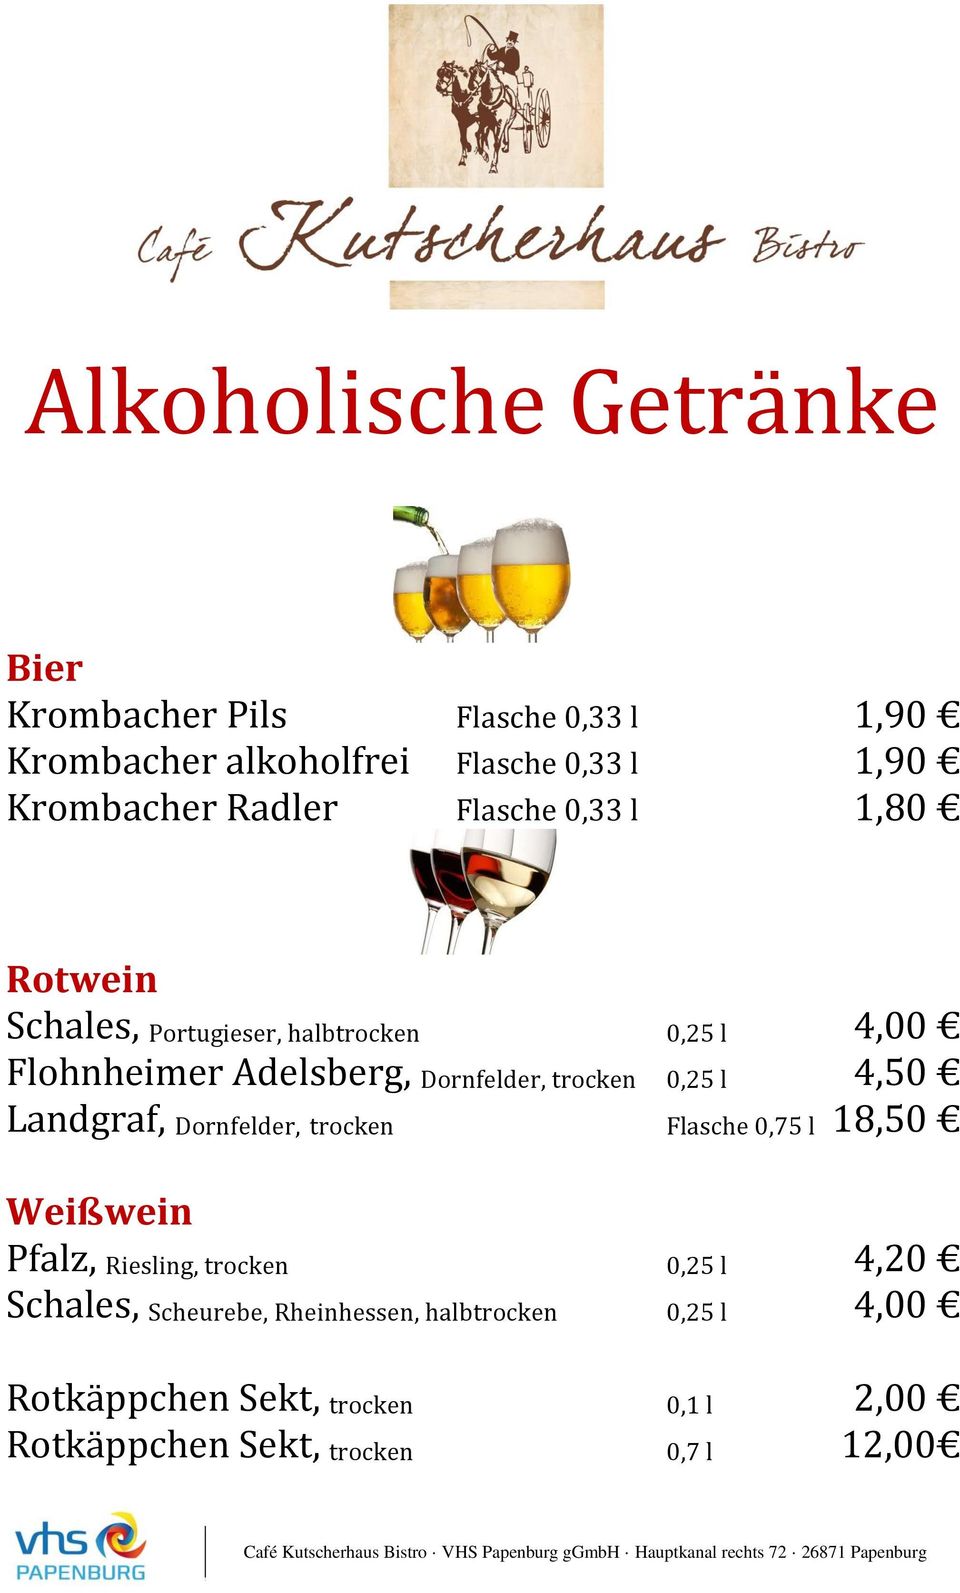 trocken 0,25 l 4,50 Landgraf, Dornfelder, trocken Flasche 0,75 l 18,50 Weißwein Pfalz, Riesling, trocken 0,25 l 4,20